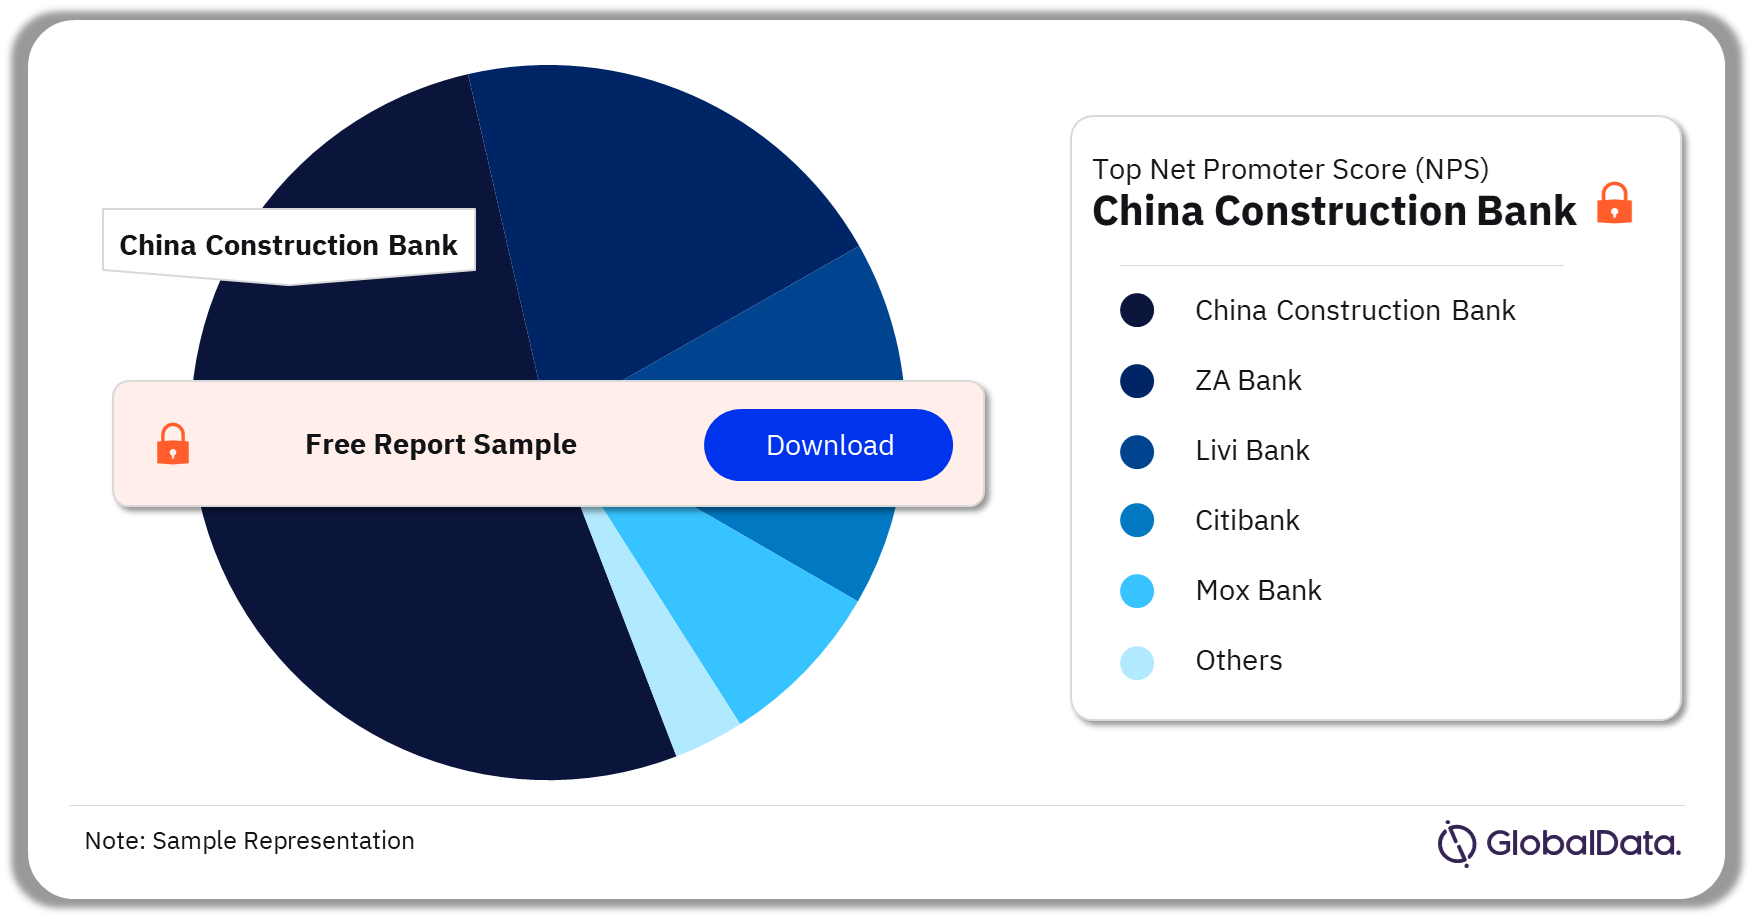 Hong Kong (China SAR) Retail Banking Market Analysis by Net Promoter Score, 2022 (%)